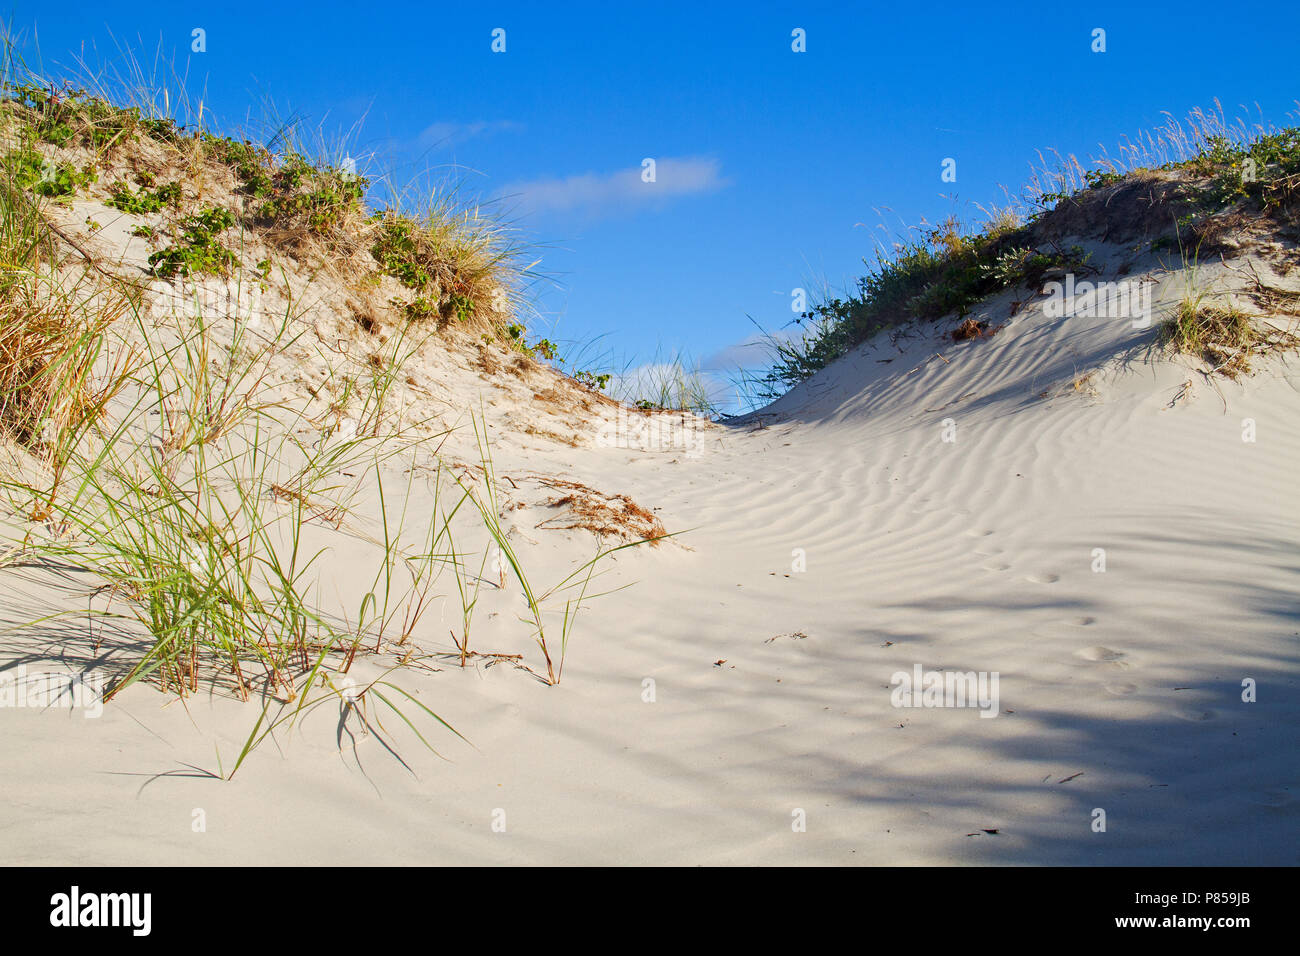 Dunes cultivé avec l'ammophile et de Dewberry sous un ciel bleu, des empreintes d'un animal, probablement un renard, dans le sable ondulée Banque D'Images